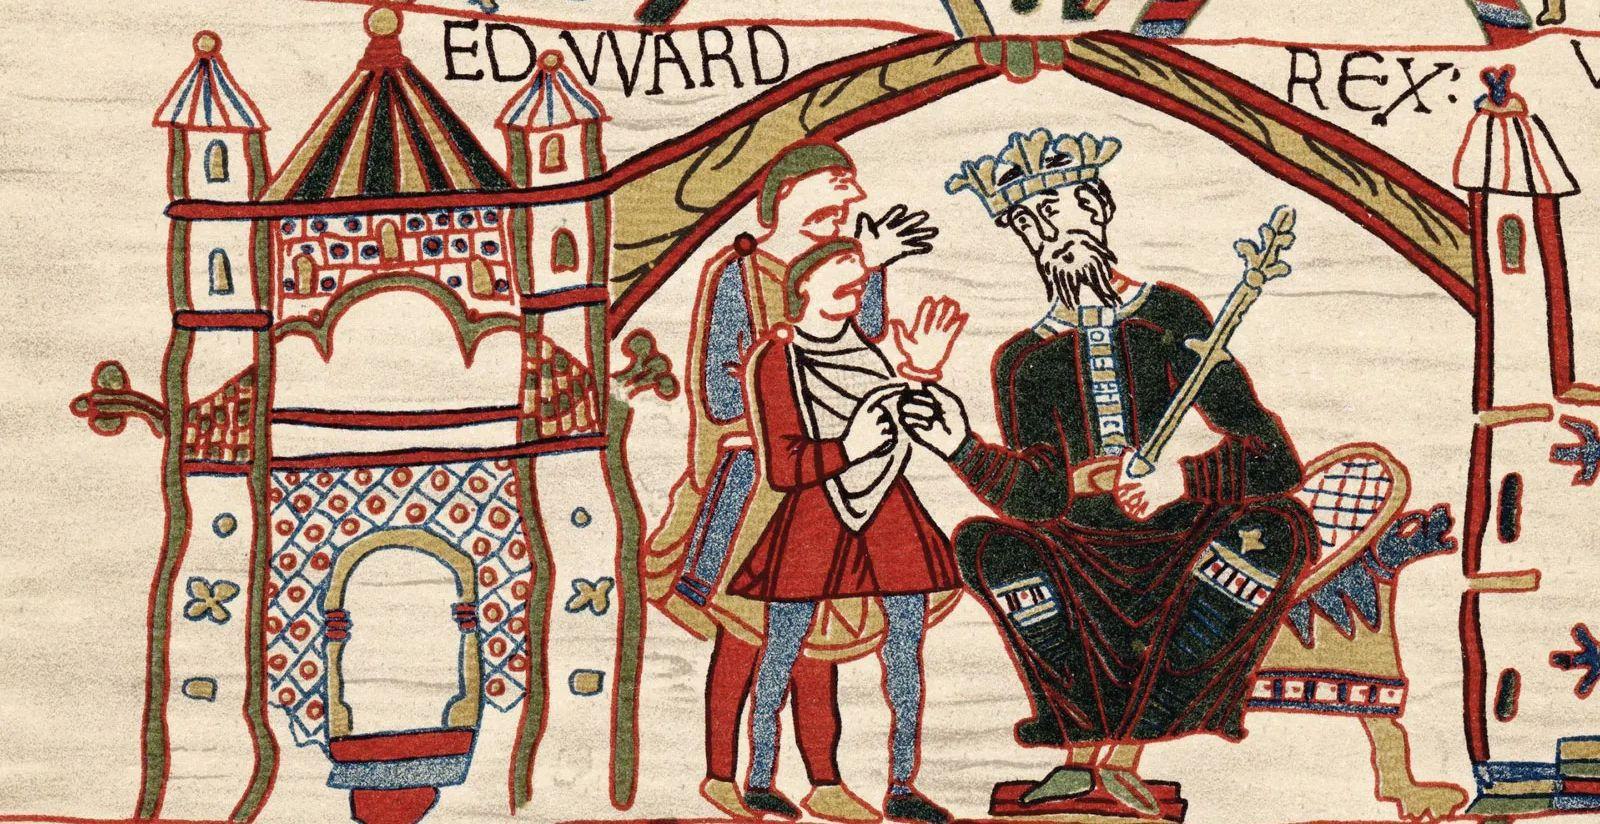 Edward de Belijder, zachtaardige en heilige koning